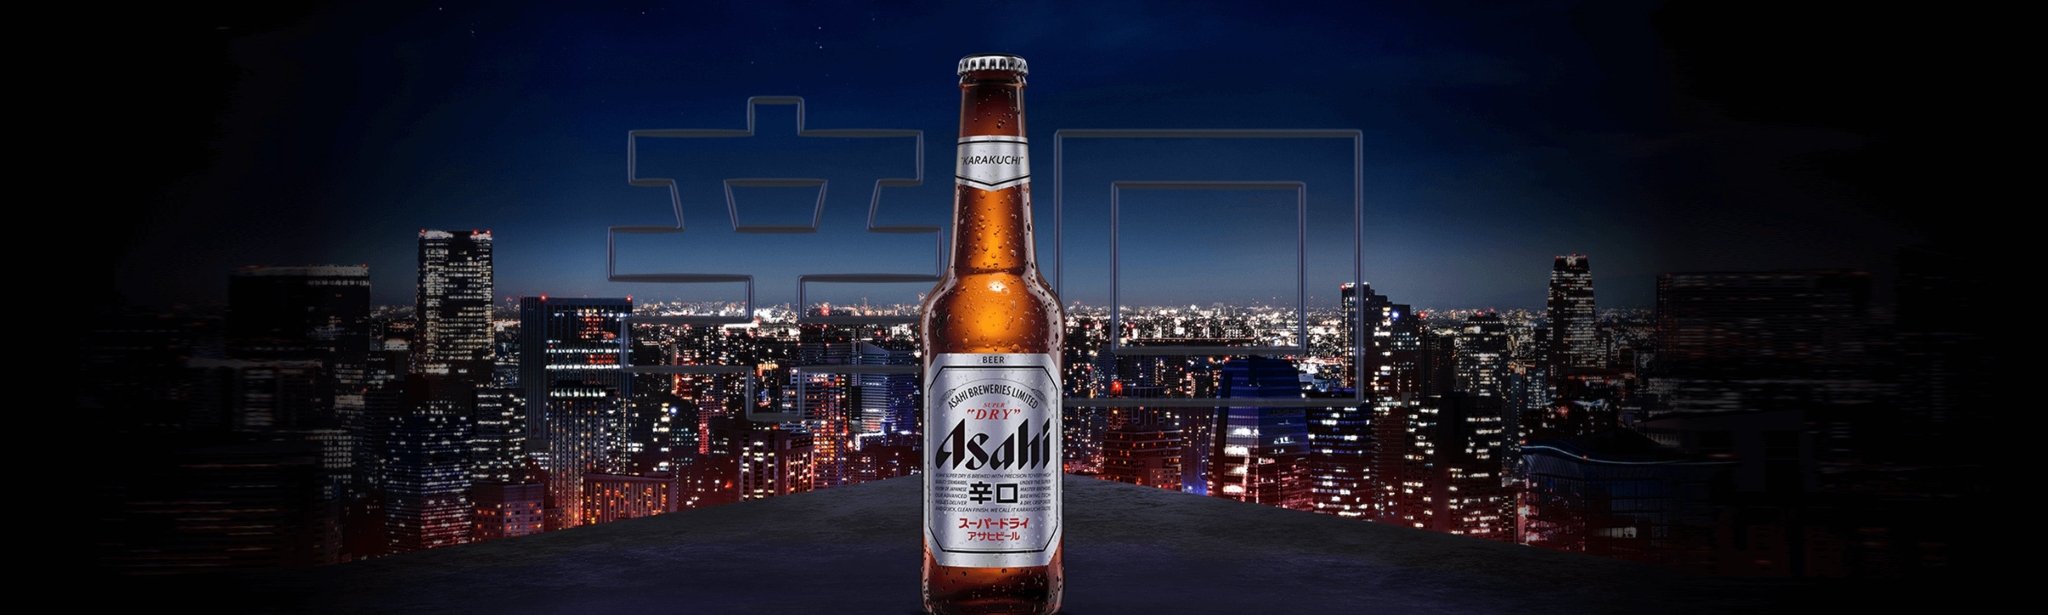 Asahi - The Bottle Club